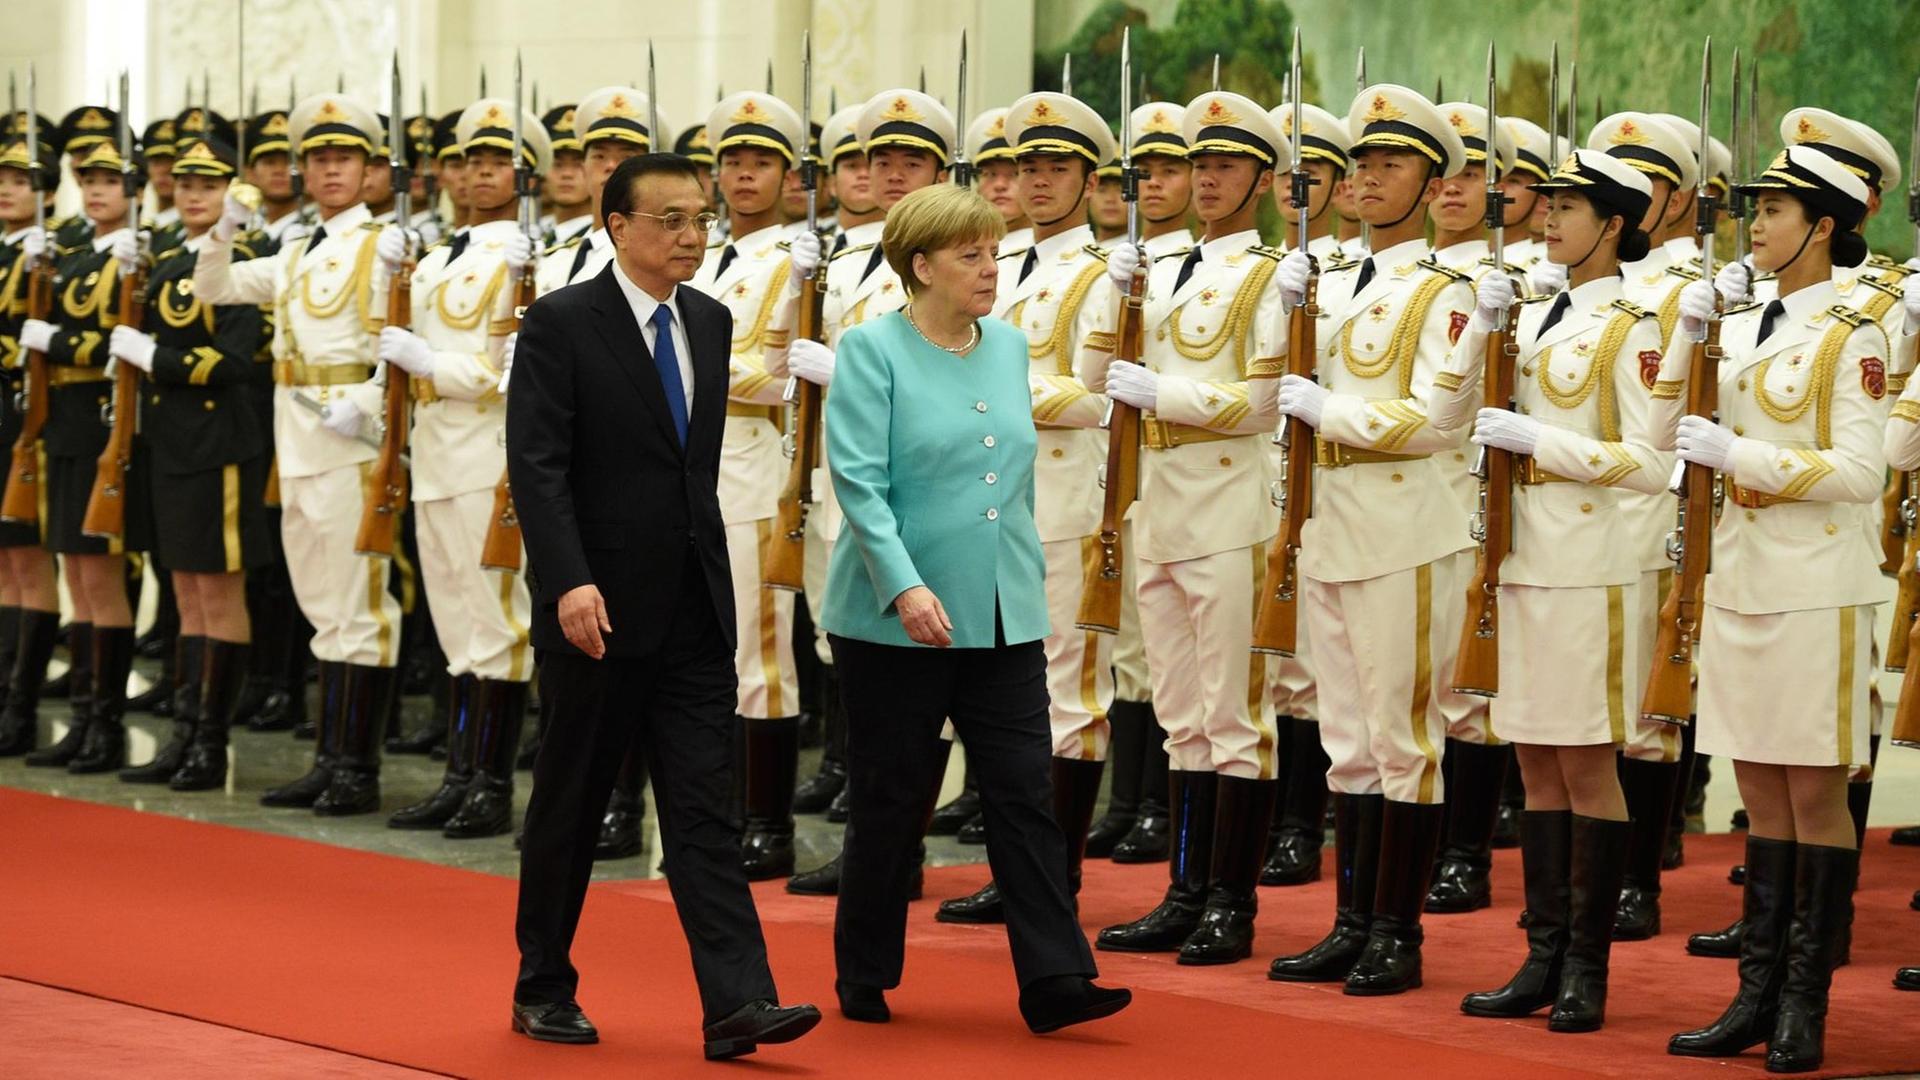 Bundeskanzlerin Angela Merkel wird durch den Ministerpräsidenten der Volksrepublik China, Li Keqiang, in der Großen Halle des Volkes in Peking mit militärischen Ehren begrüßt.